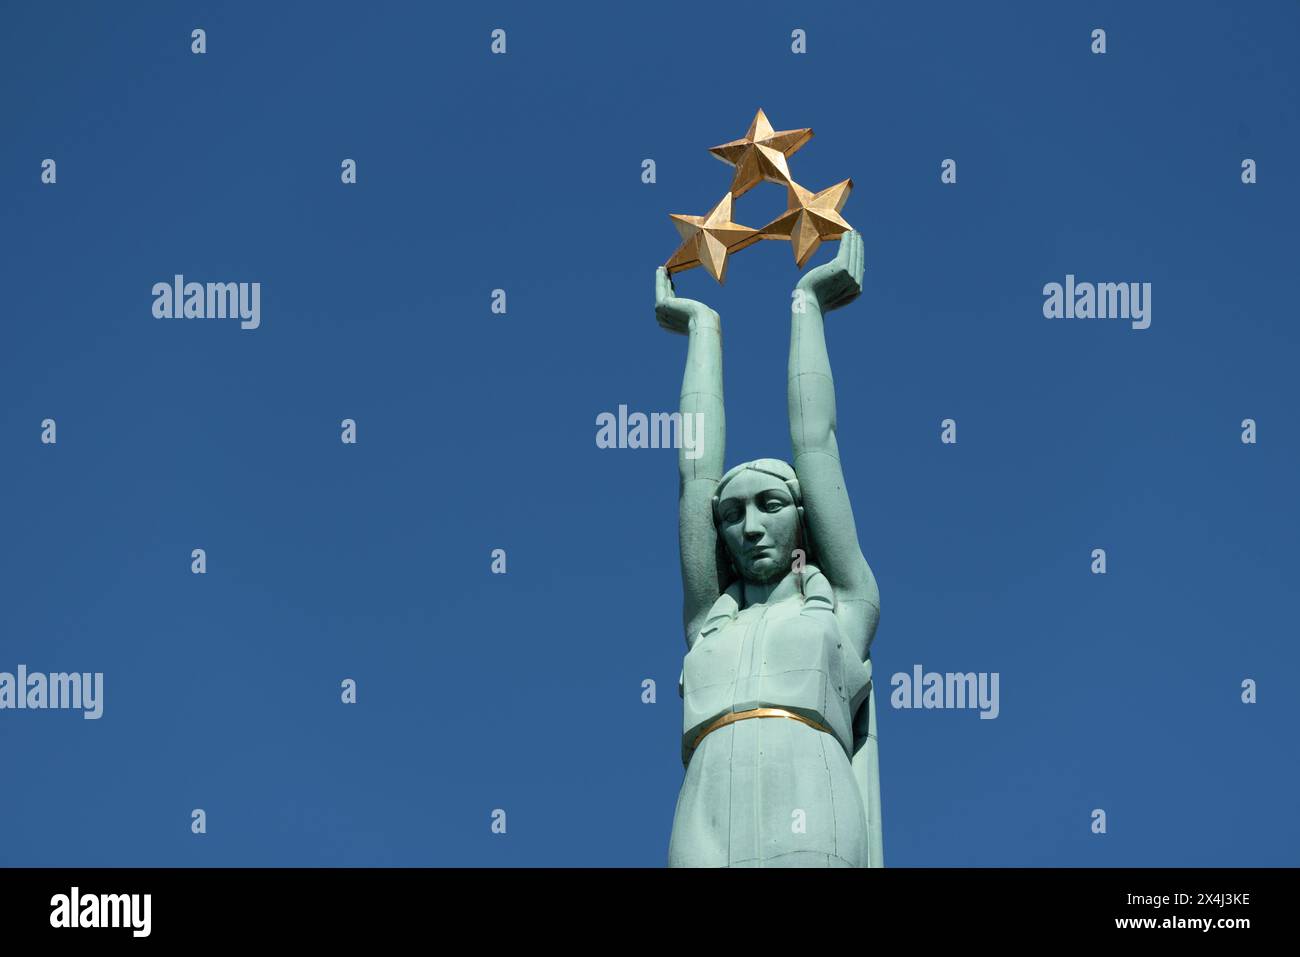 Monument de la liberté, érigé en 1935 au moment de la première indépendance de la Lettonie, statue féminine de la liberté tenant trois étoiles d'or dans ses mains, affecte Banque D'Images